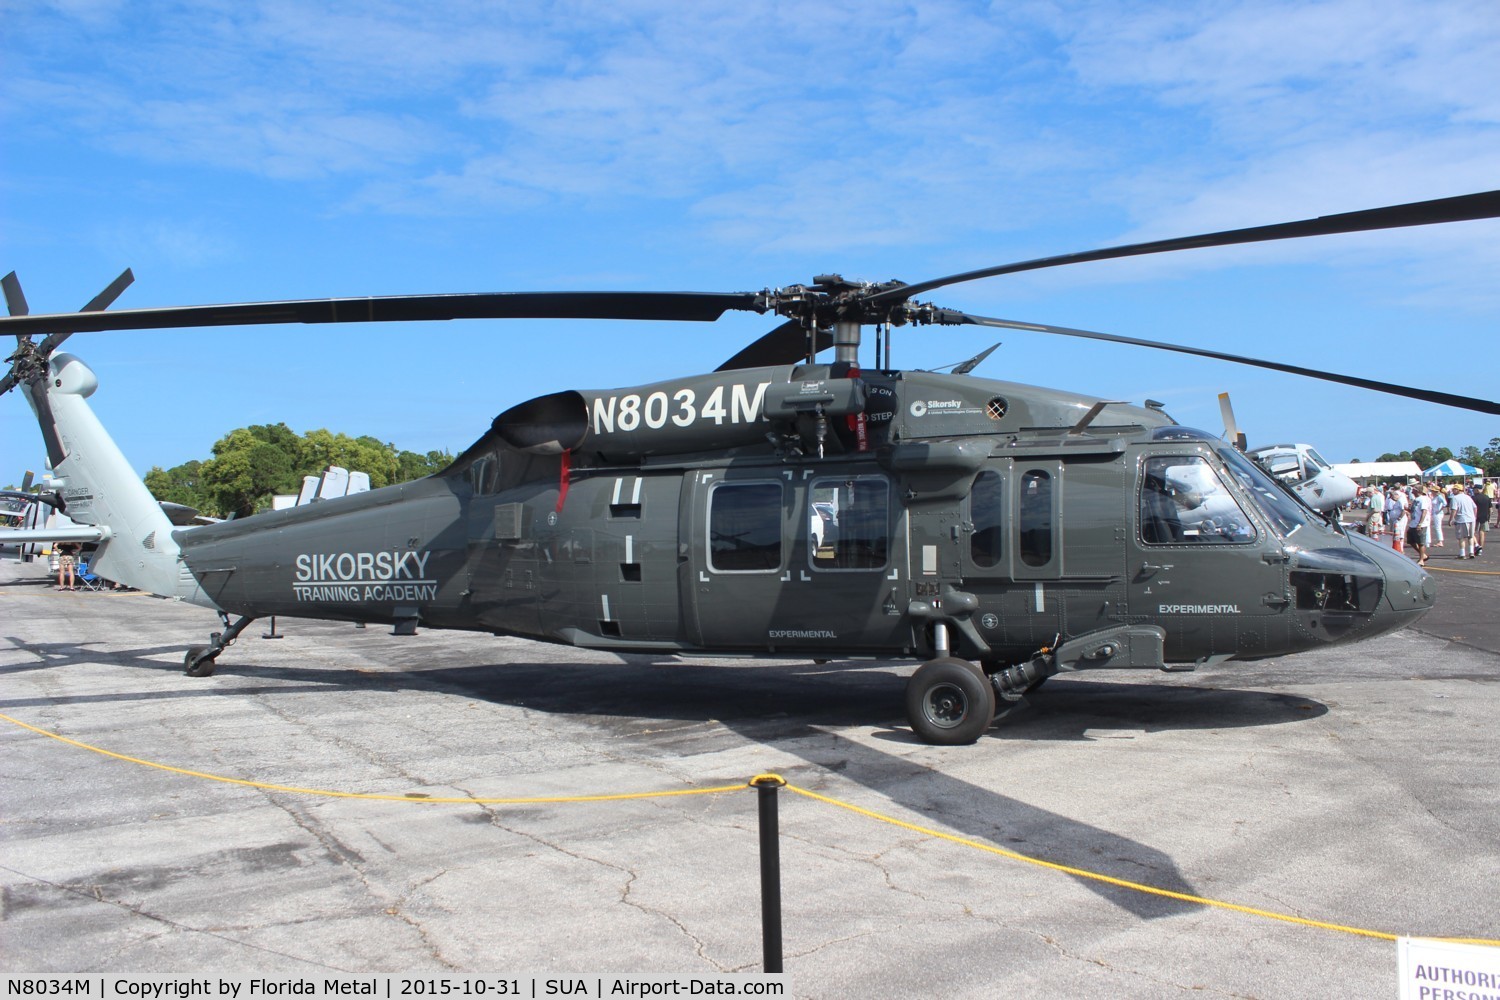 N8034M, Sikorsky H-60 C/N n/a, H-60 trainer